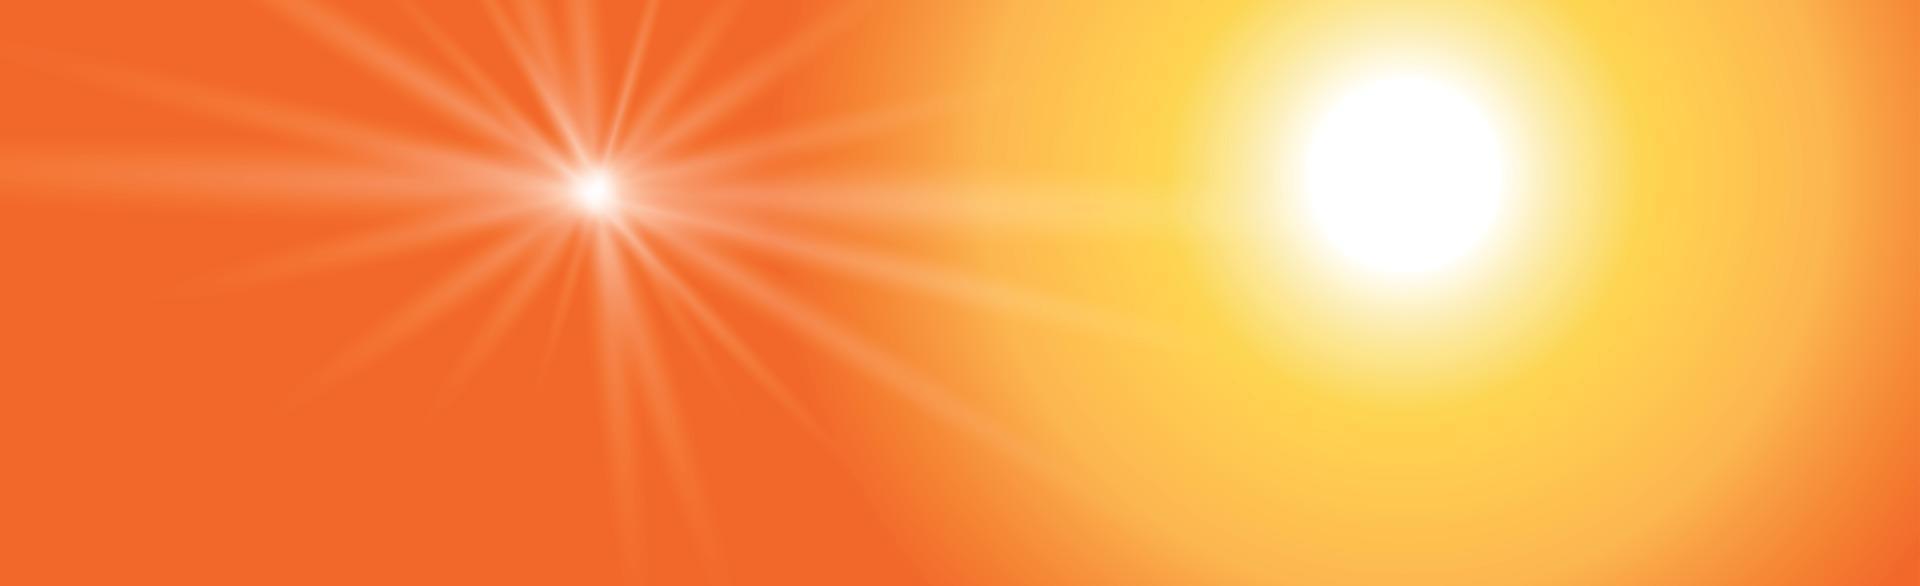 sol brillante sobre un fondo amarillo-naranja - ilustración vector